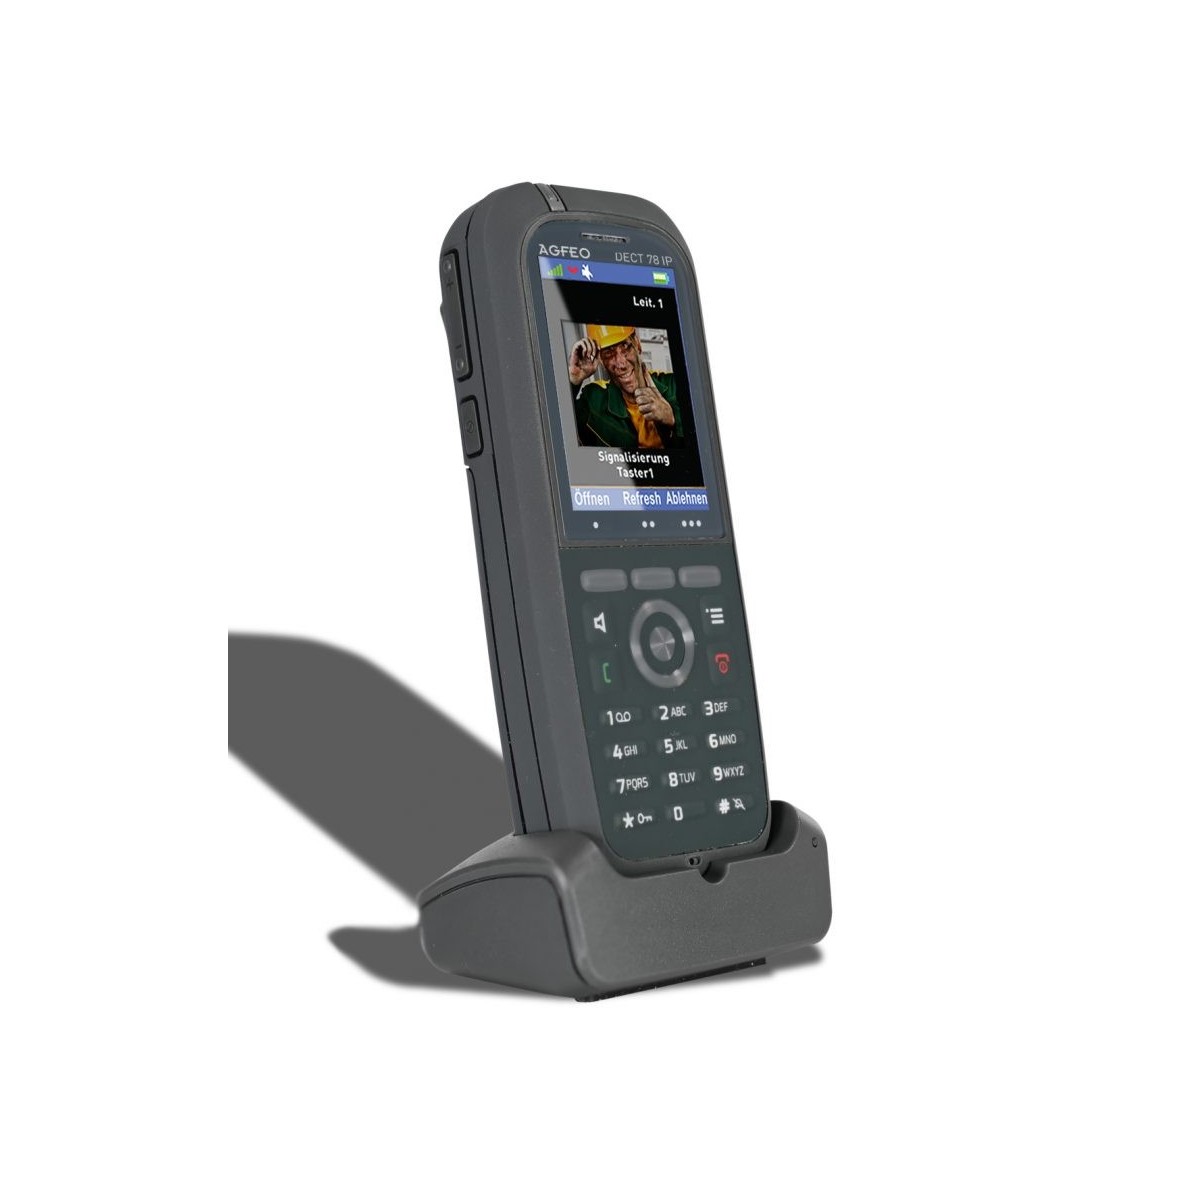 AGFEO DECT 78 IP - IP-Telefon - Grau - Kabelloses Mobilteil - Tisch/Bank - IP65 - 249 Eintragungen